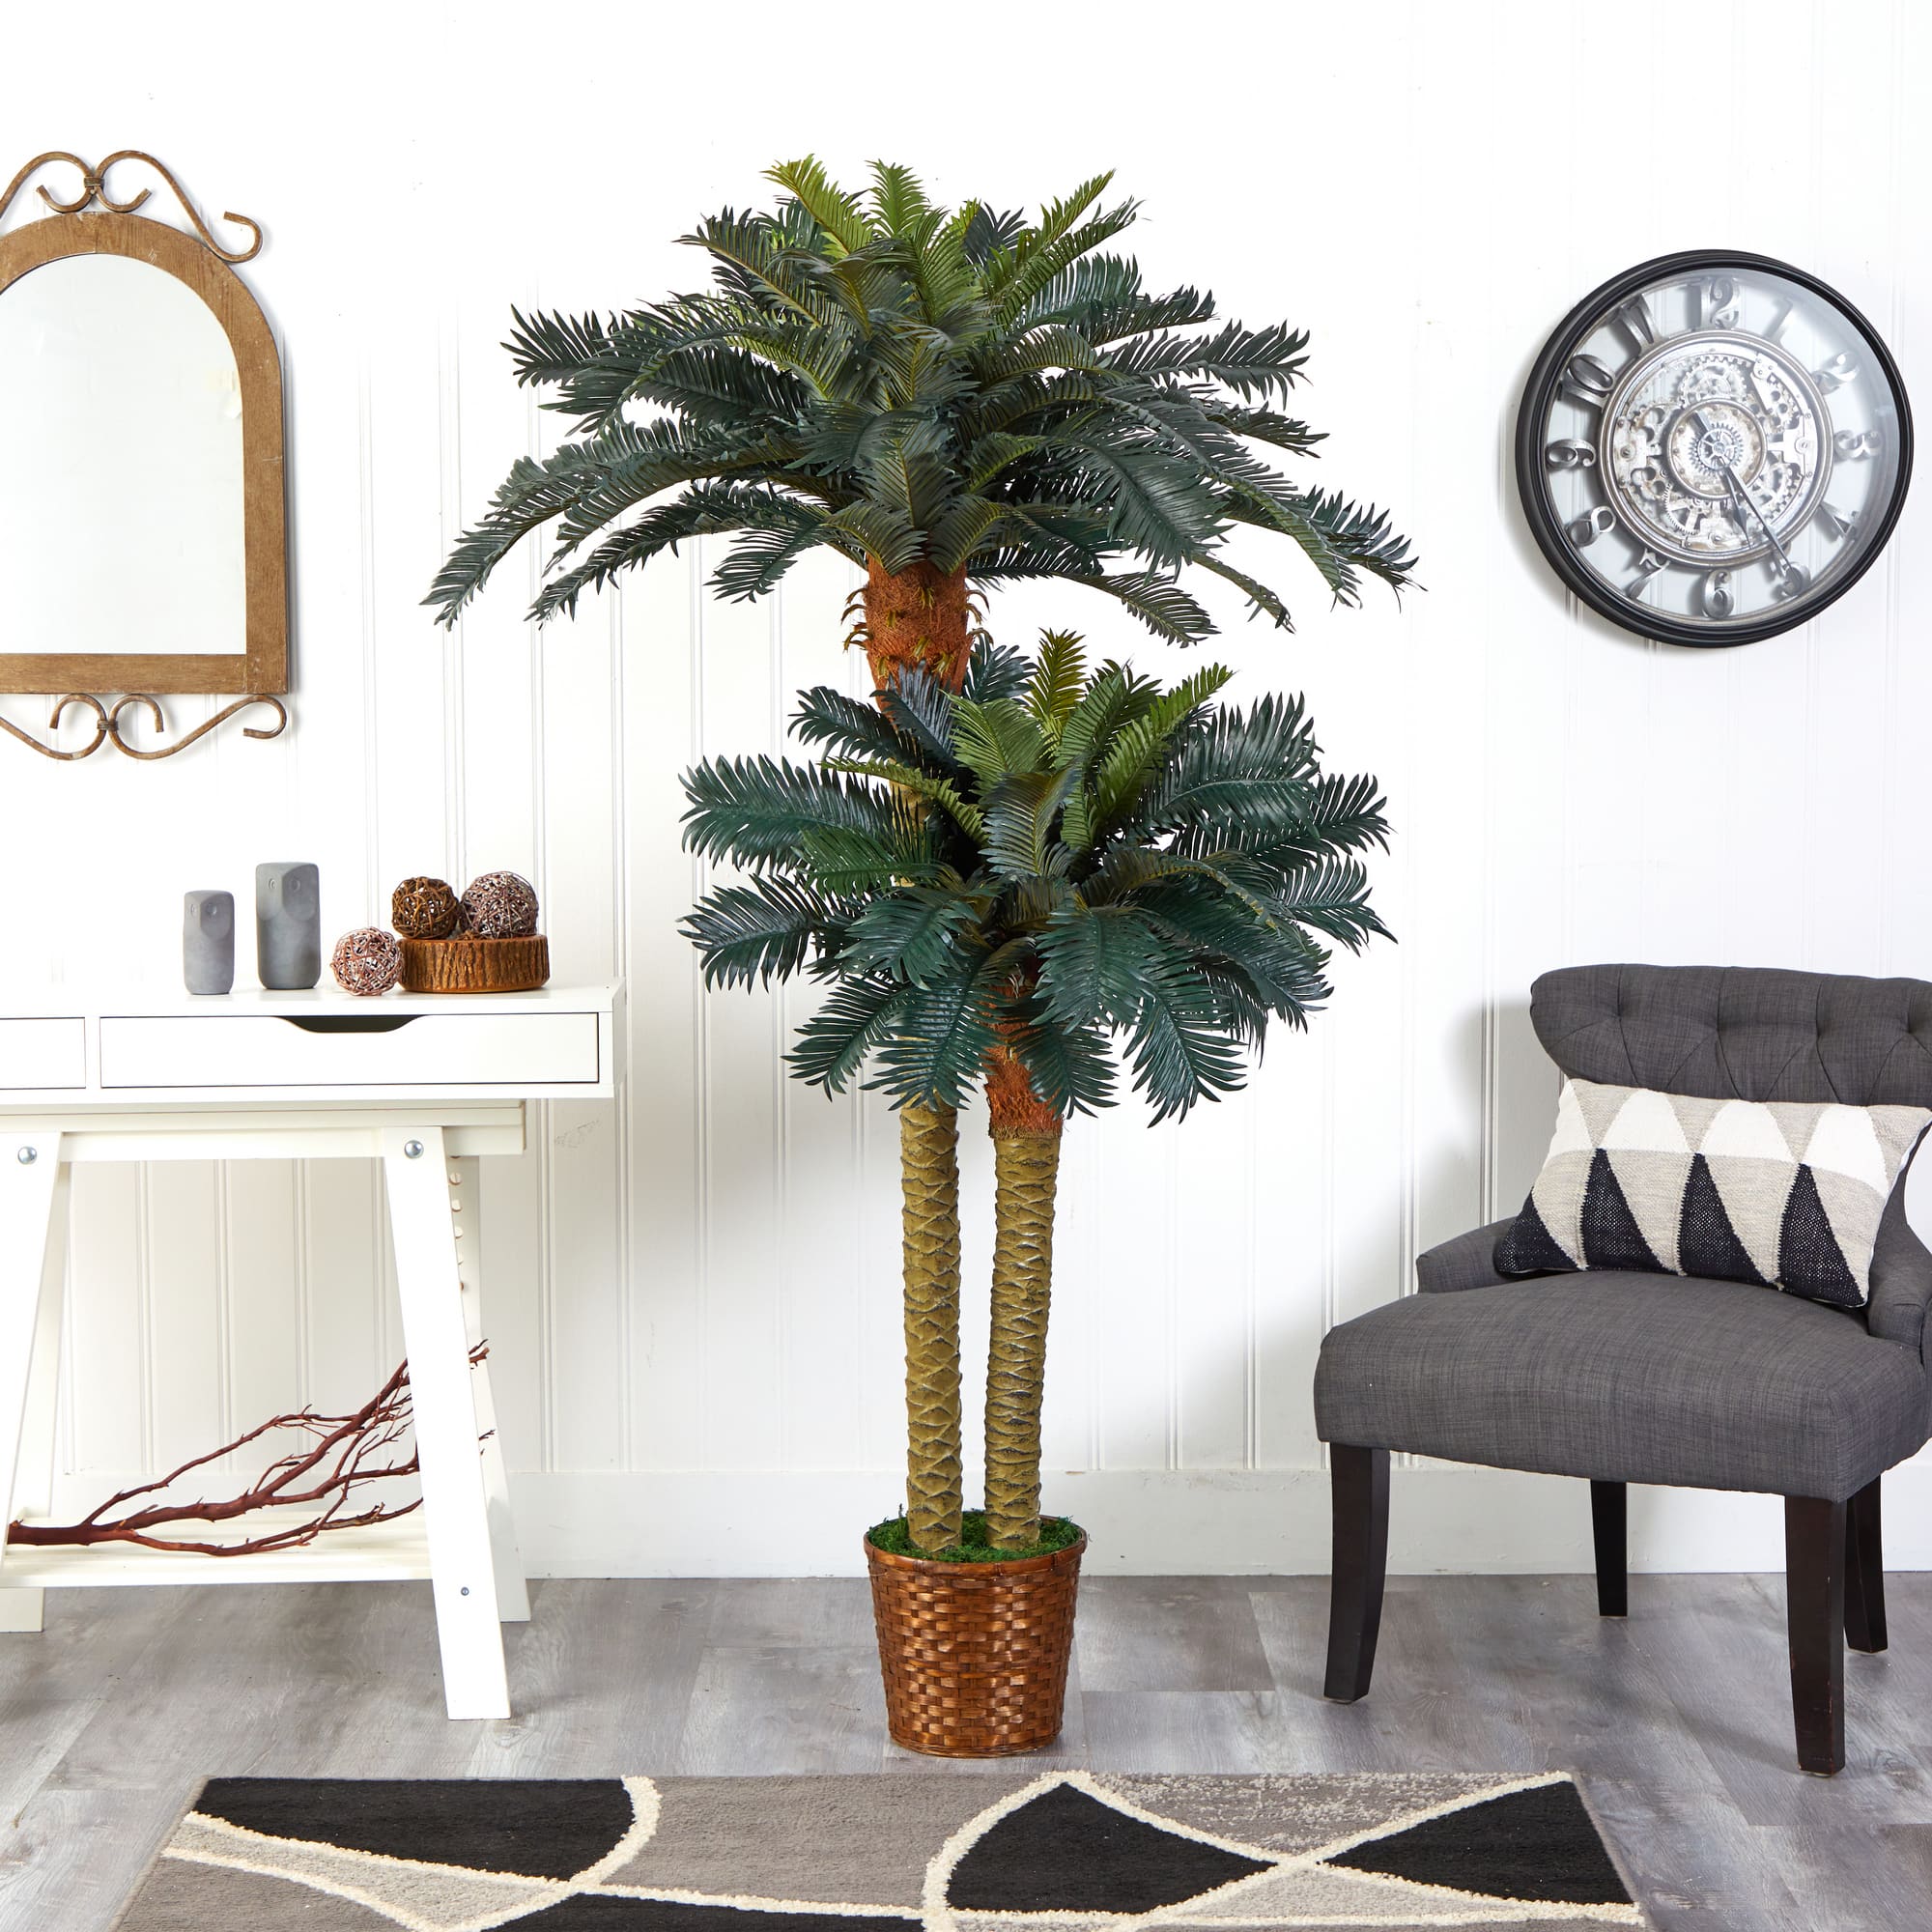 6ft. Sago Palm Double Tree in Wicker Basket Pot